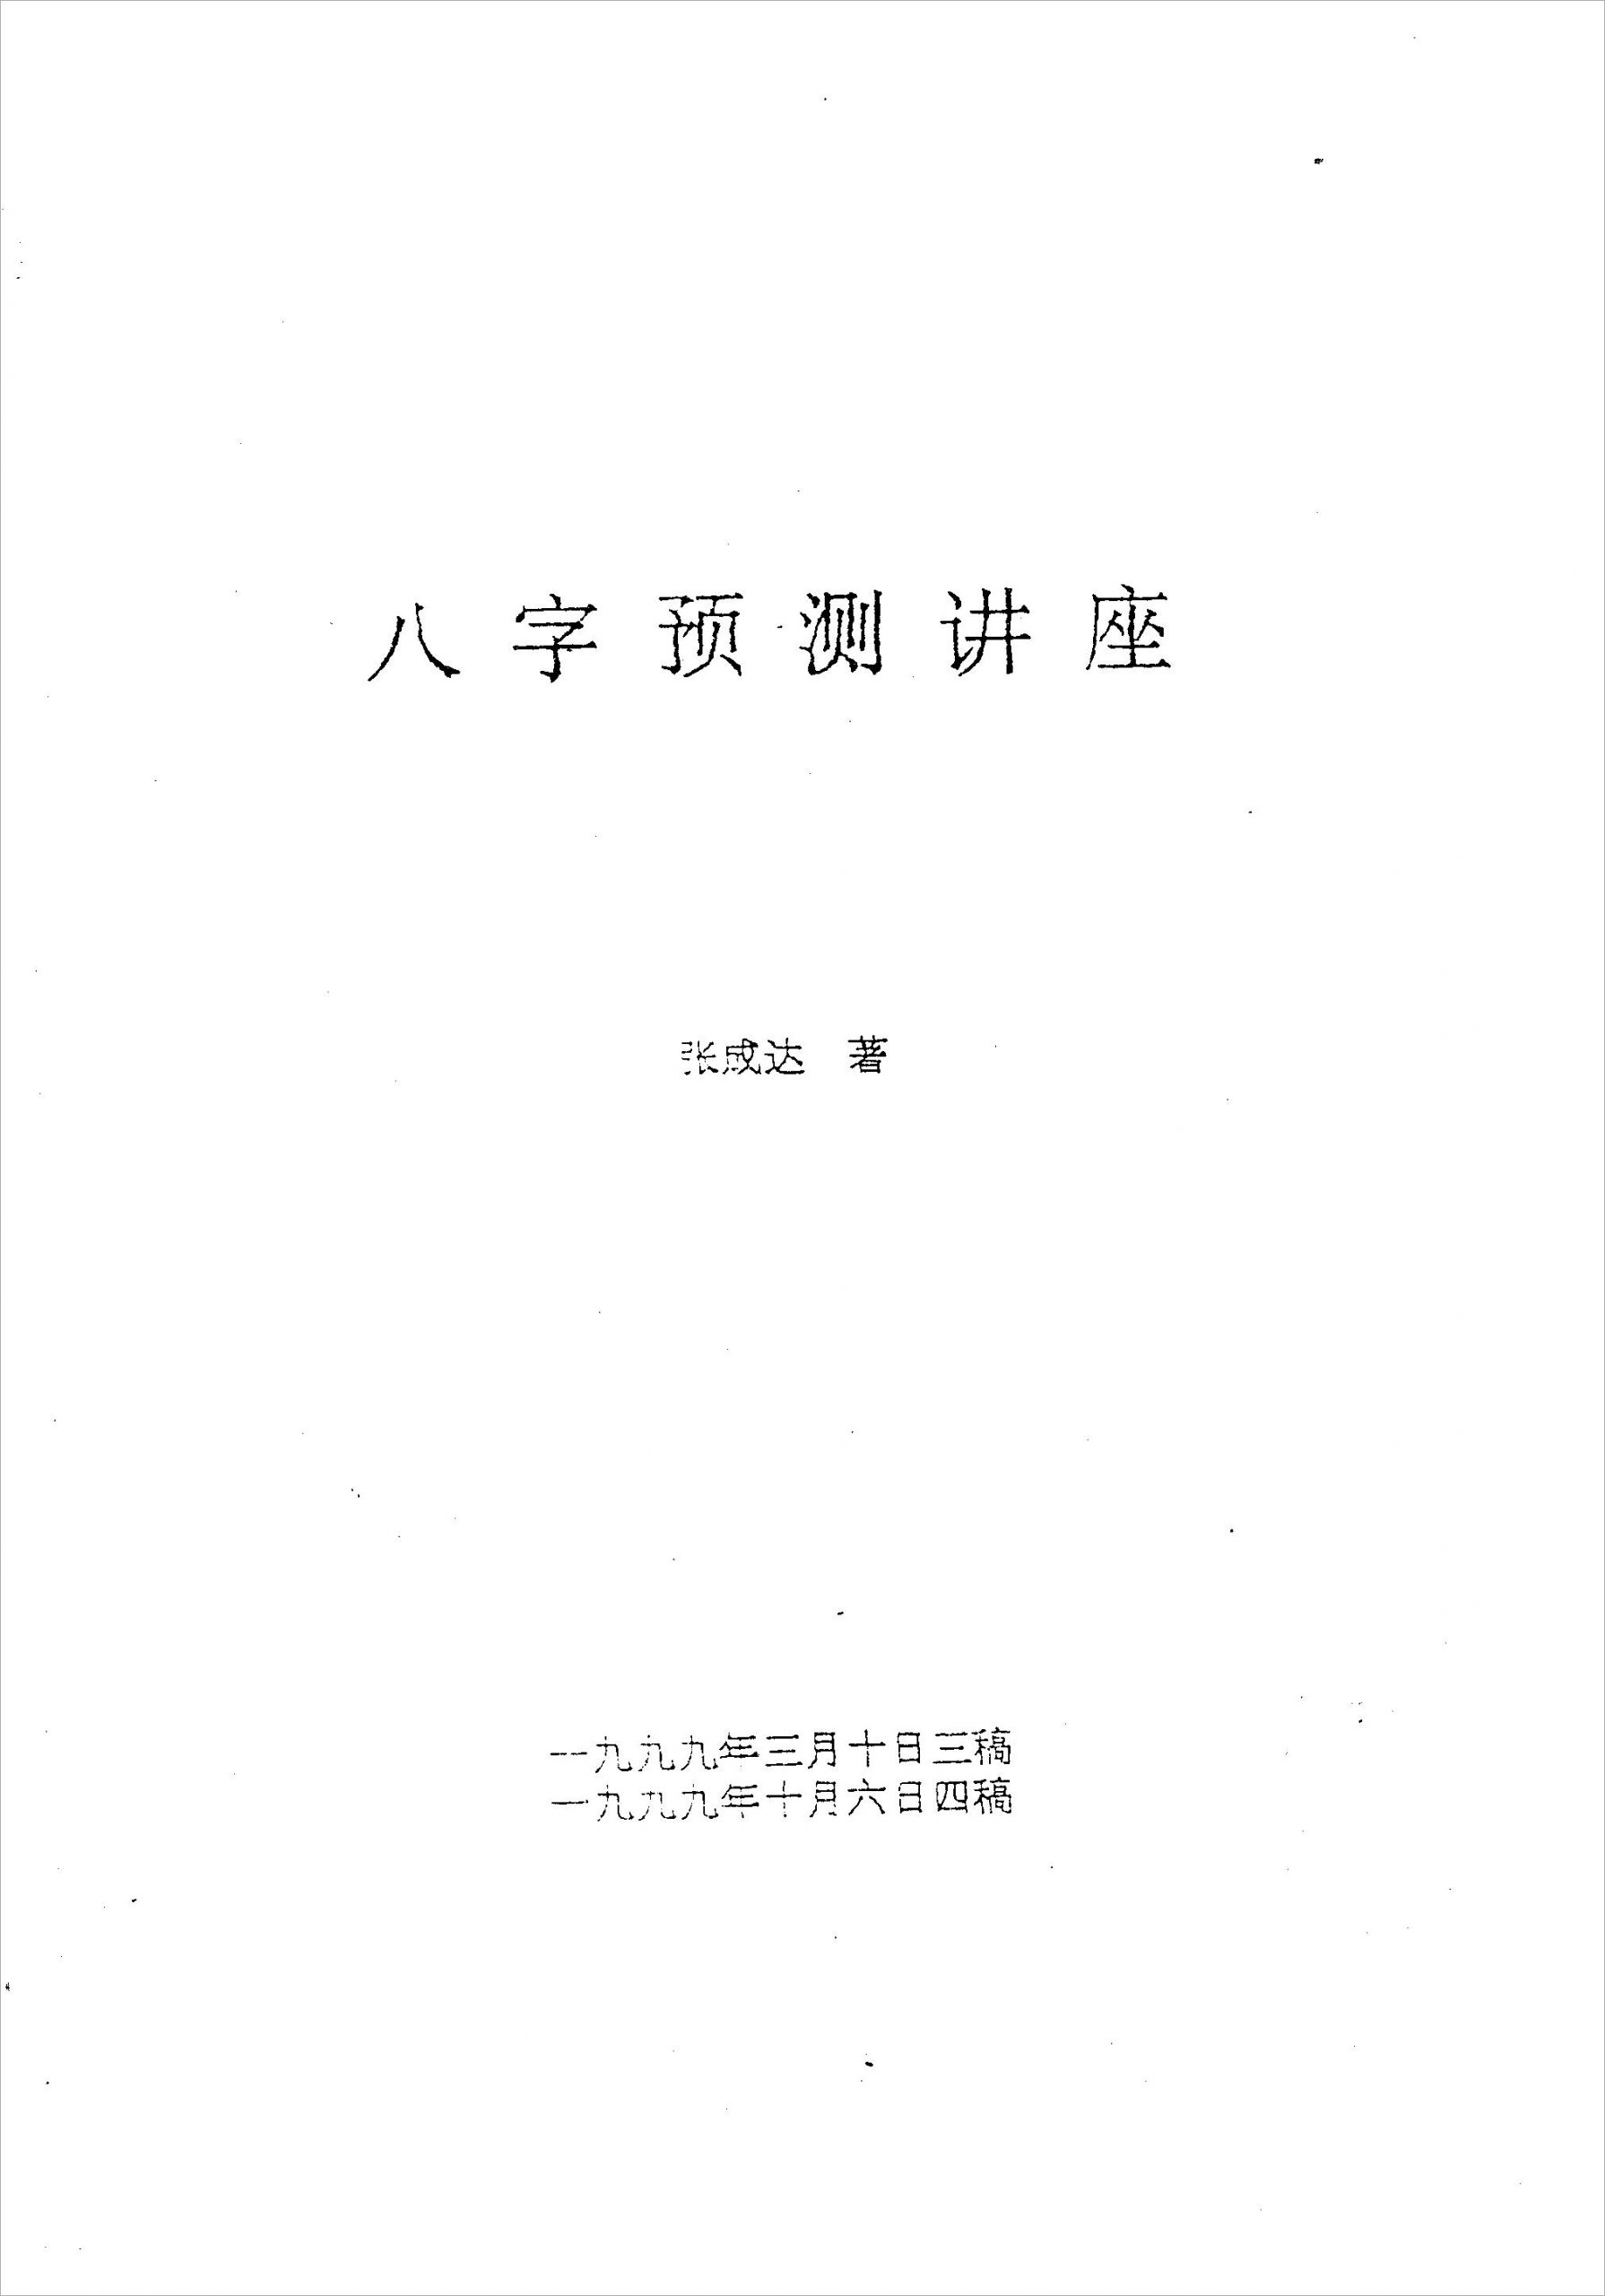 张成达-八字预测讲座.pdf